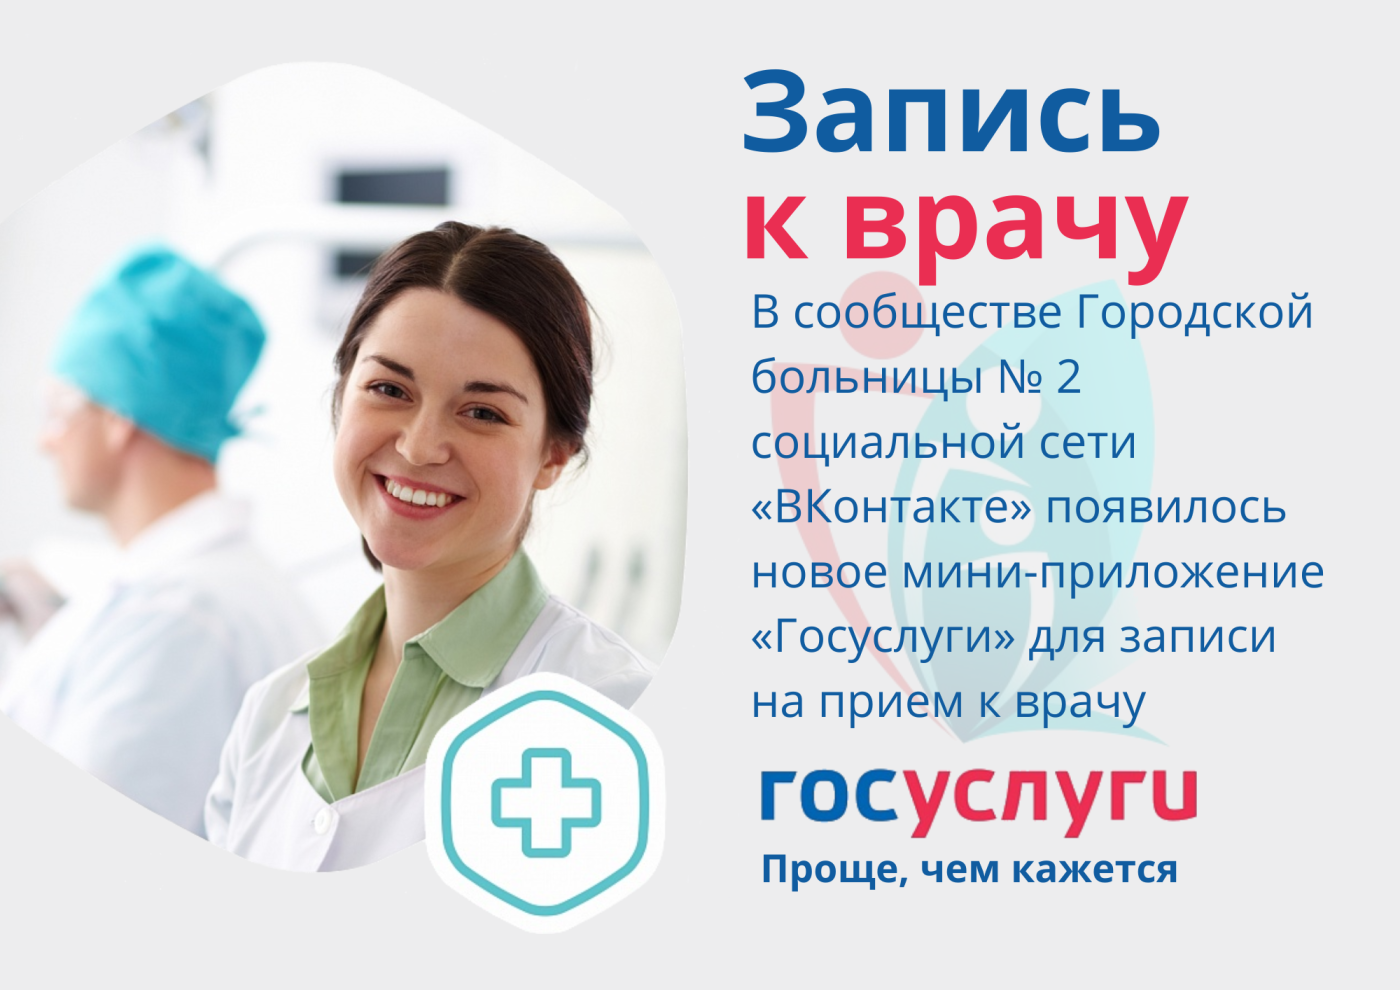 Пациенты Городской больницы № 2 могут записаться к врачу через госпаблик в соцсети "ВКонтакте"